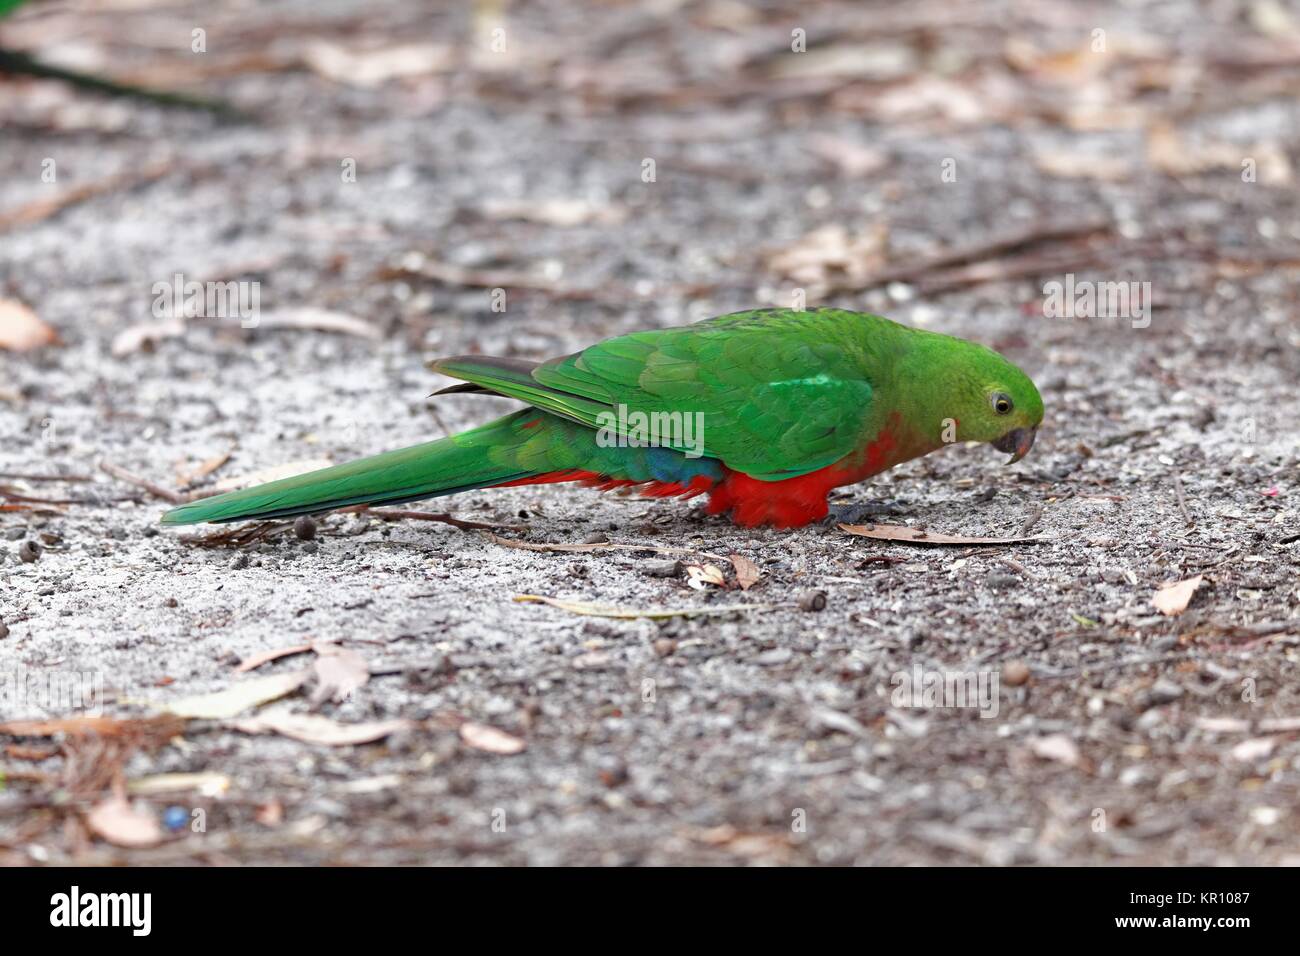 King parrot femelle Banque D'Images